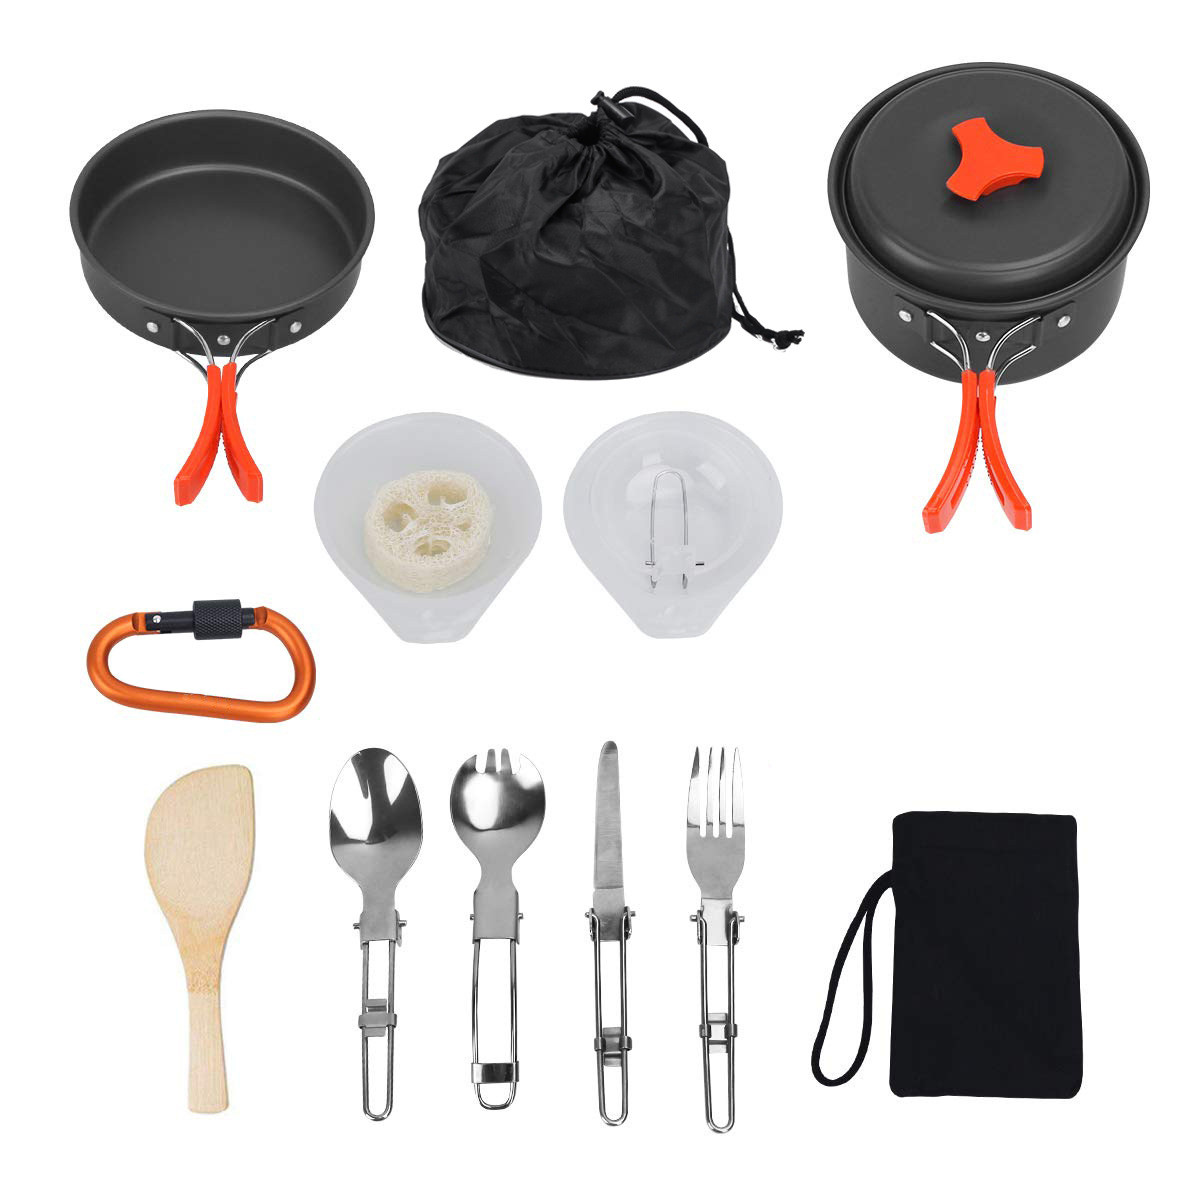 Portable-14pcs-Outdoor-Camping-Cookware-Set-Hiking-Cooking-Pot-Pan-Picnic-Set-AU-1935459-4